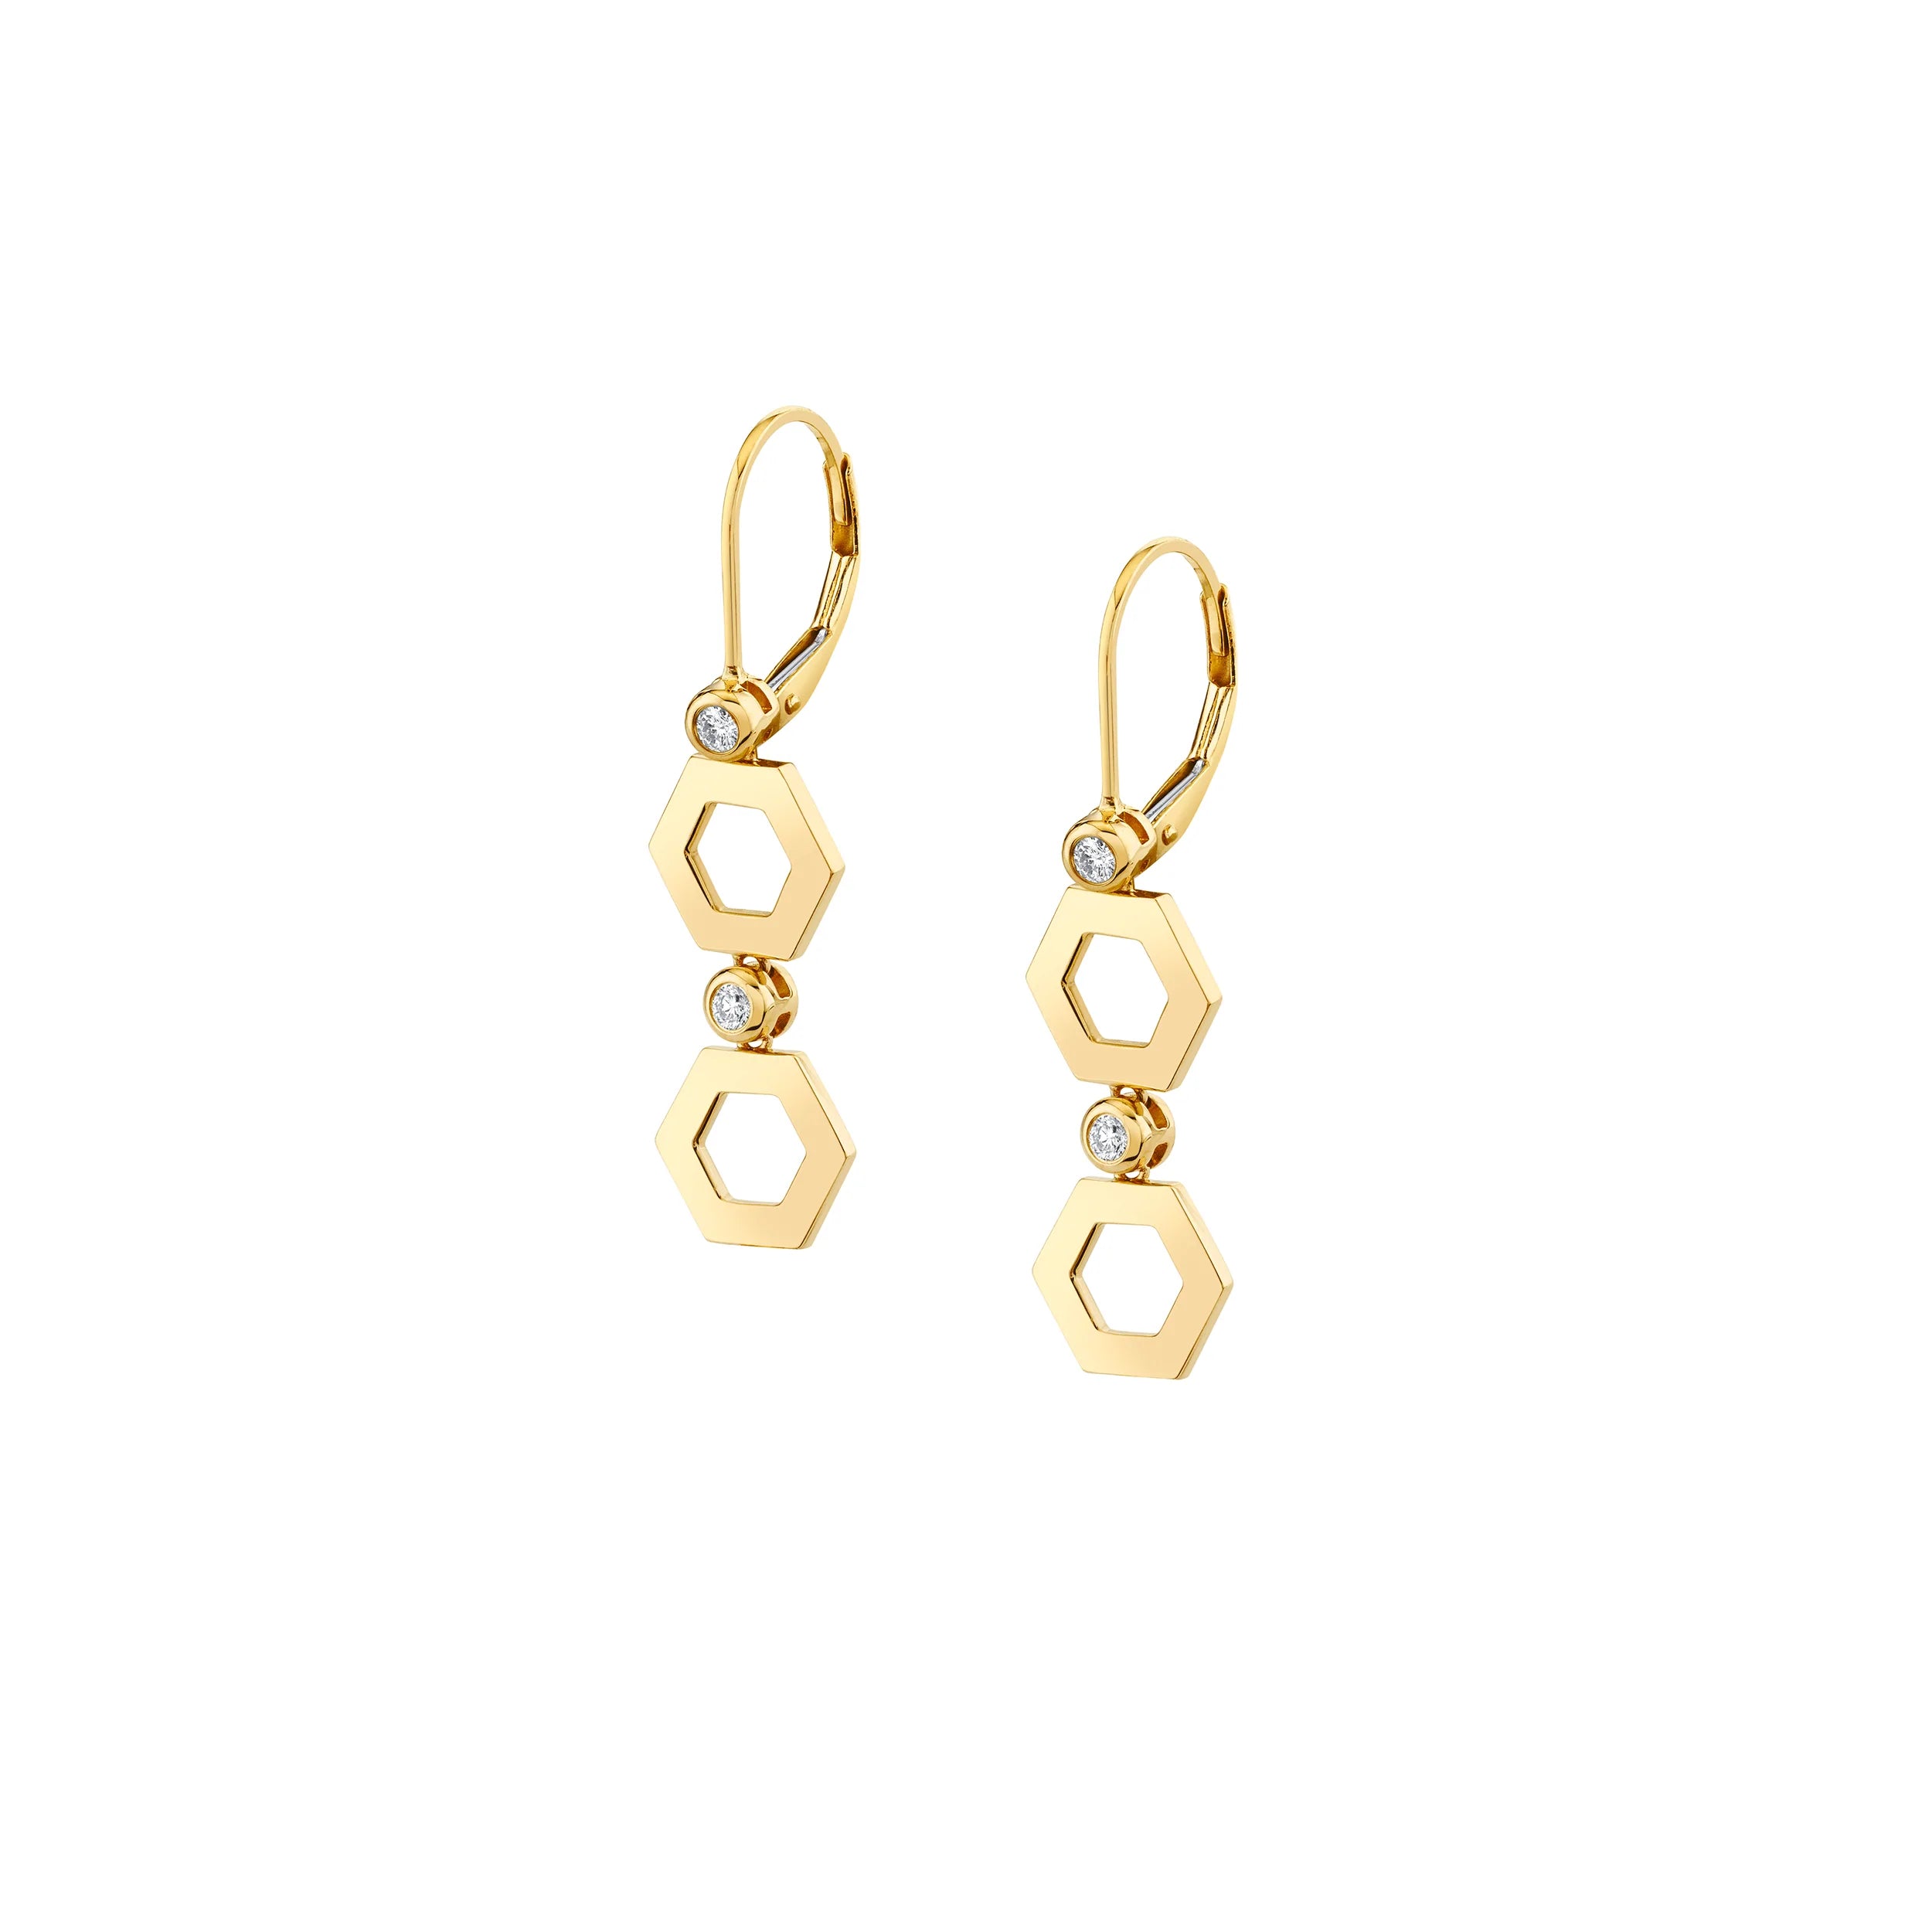 MICHAEL M Earrings 14K Yellow Gold Plain Hex Short Infinity Earrings ER516